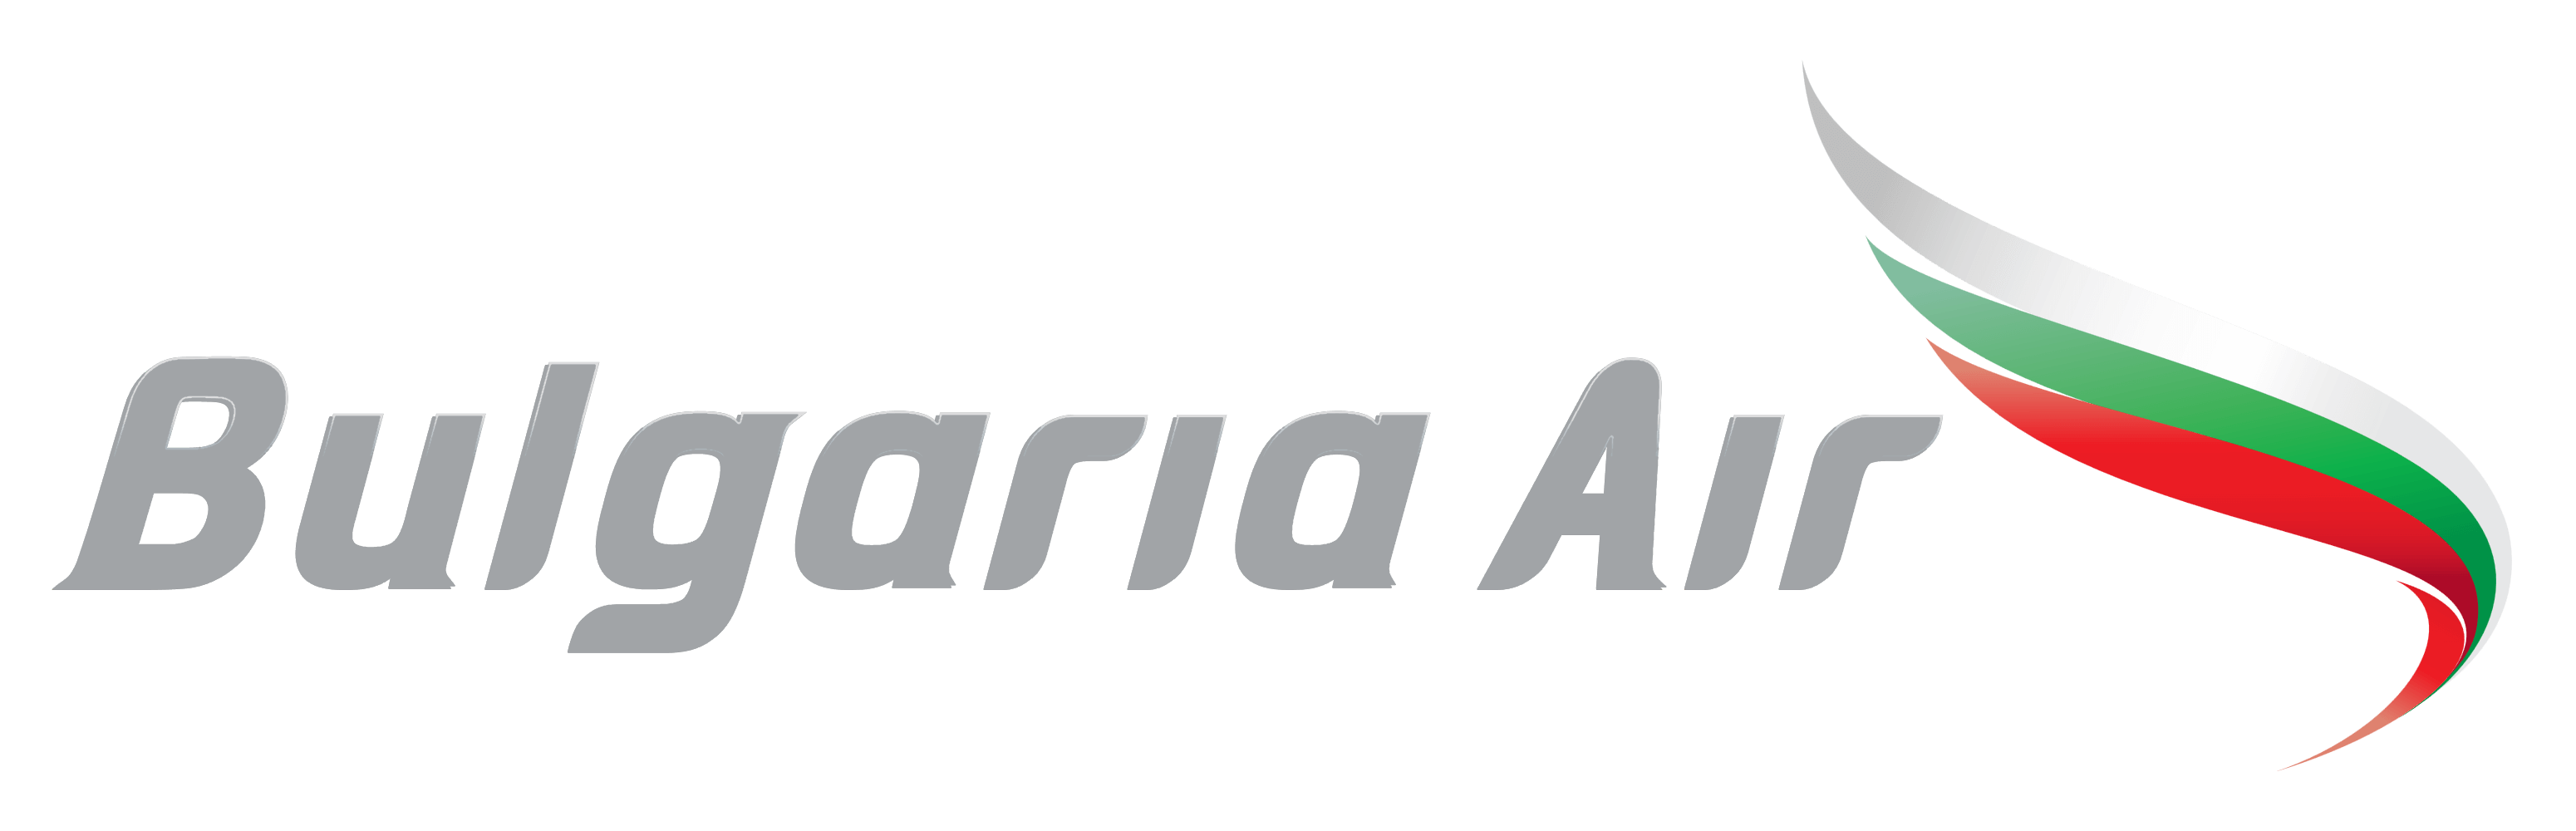 Bulgaria Air logo, logotype